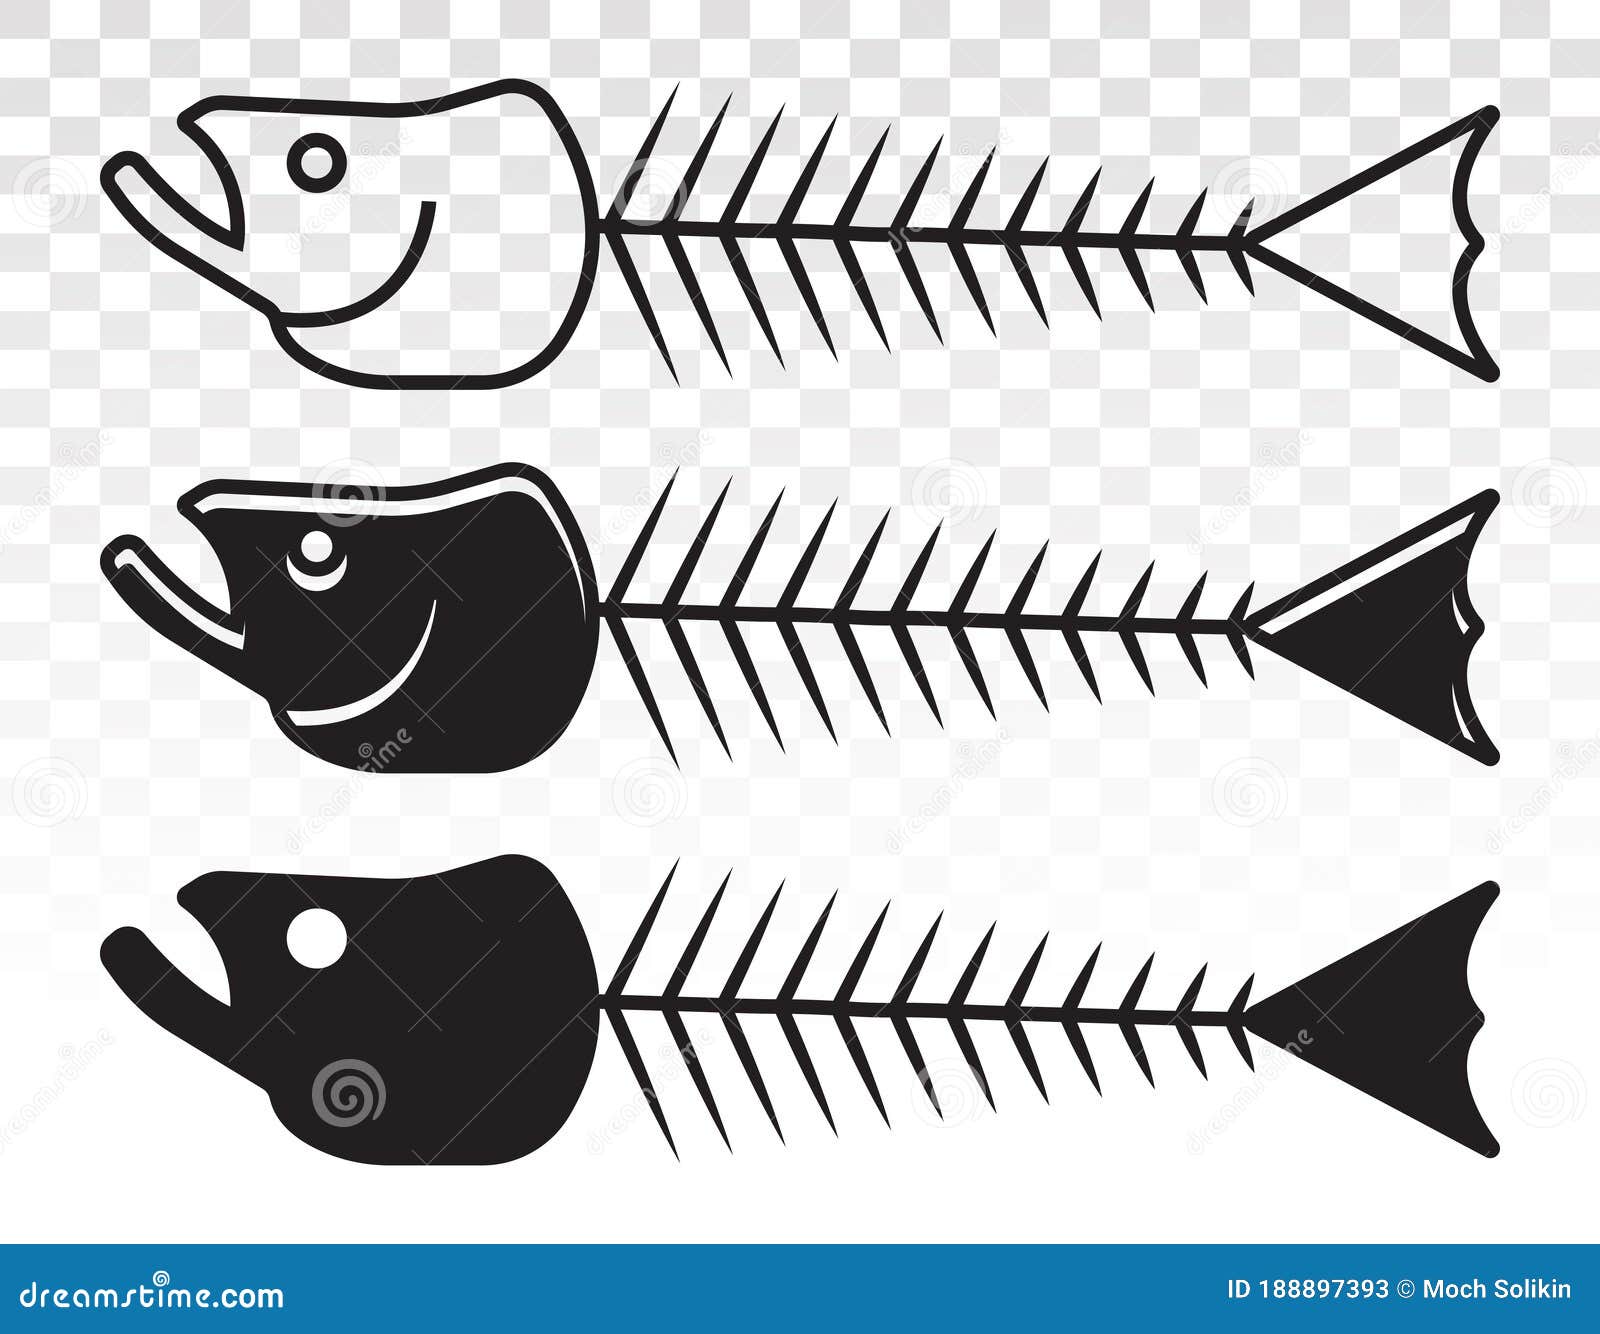 Download Fishbone Diagram Cartoon Vector | CartoonDealer.com #76486033